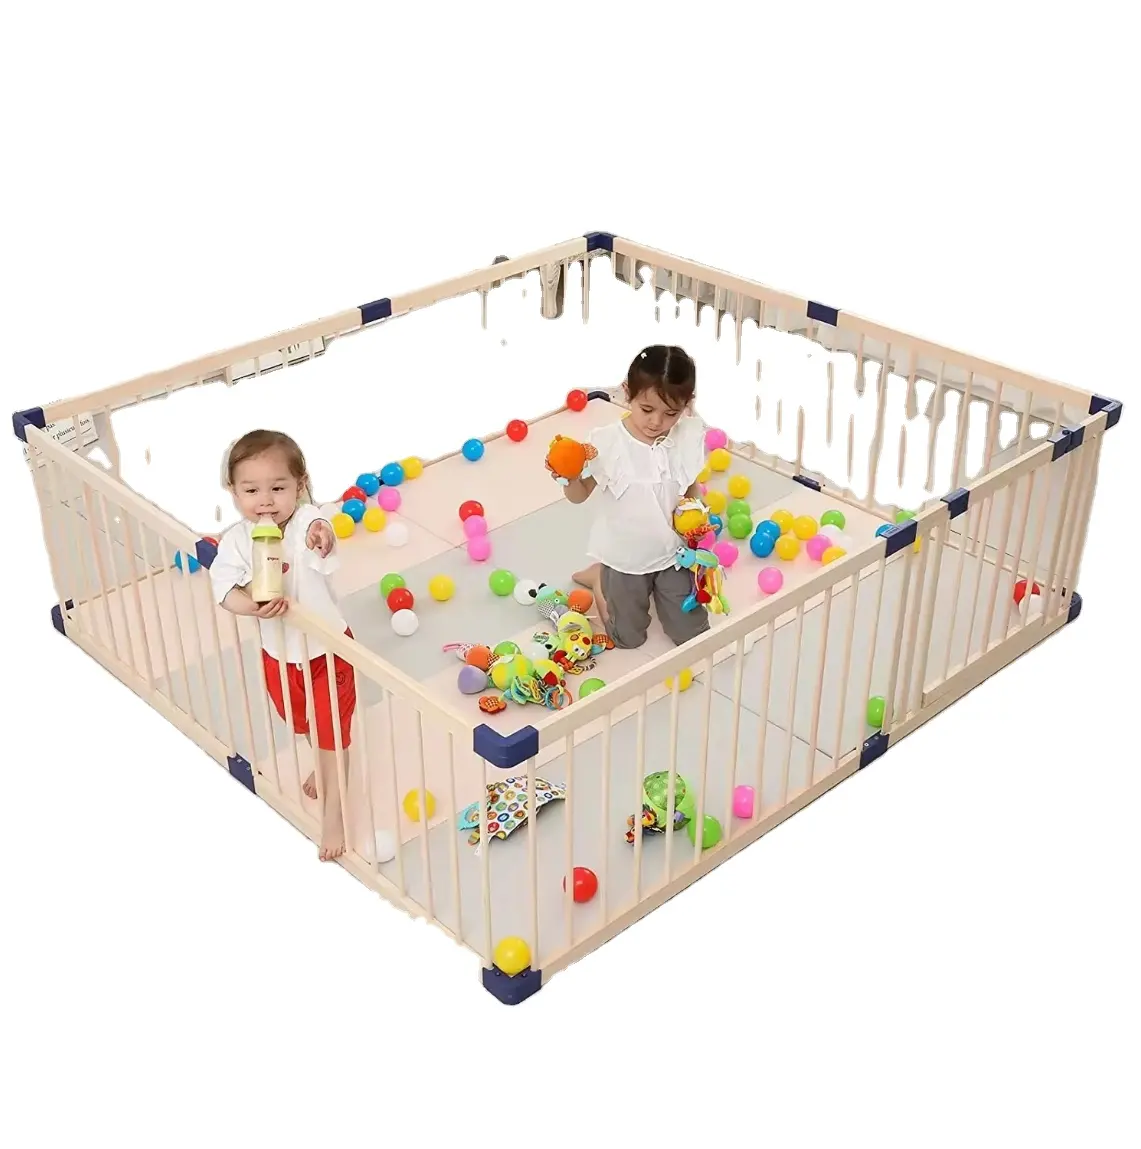 बच्चों के फोल्डेबल मनोरंजन पार्क मूवमेंट और बेबी बेड के लिए नवीनतम डिज़ाइन वाला बच्चों का लकड़ी का प्लेपेन